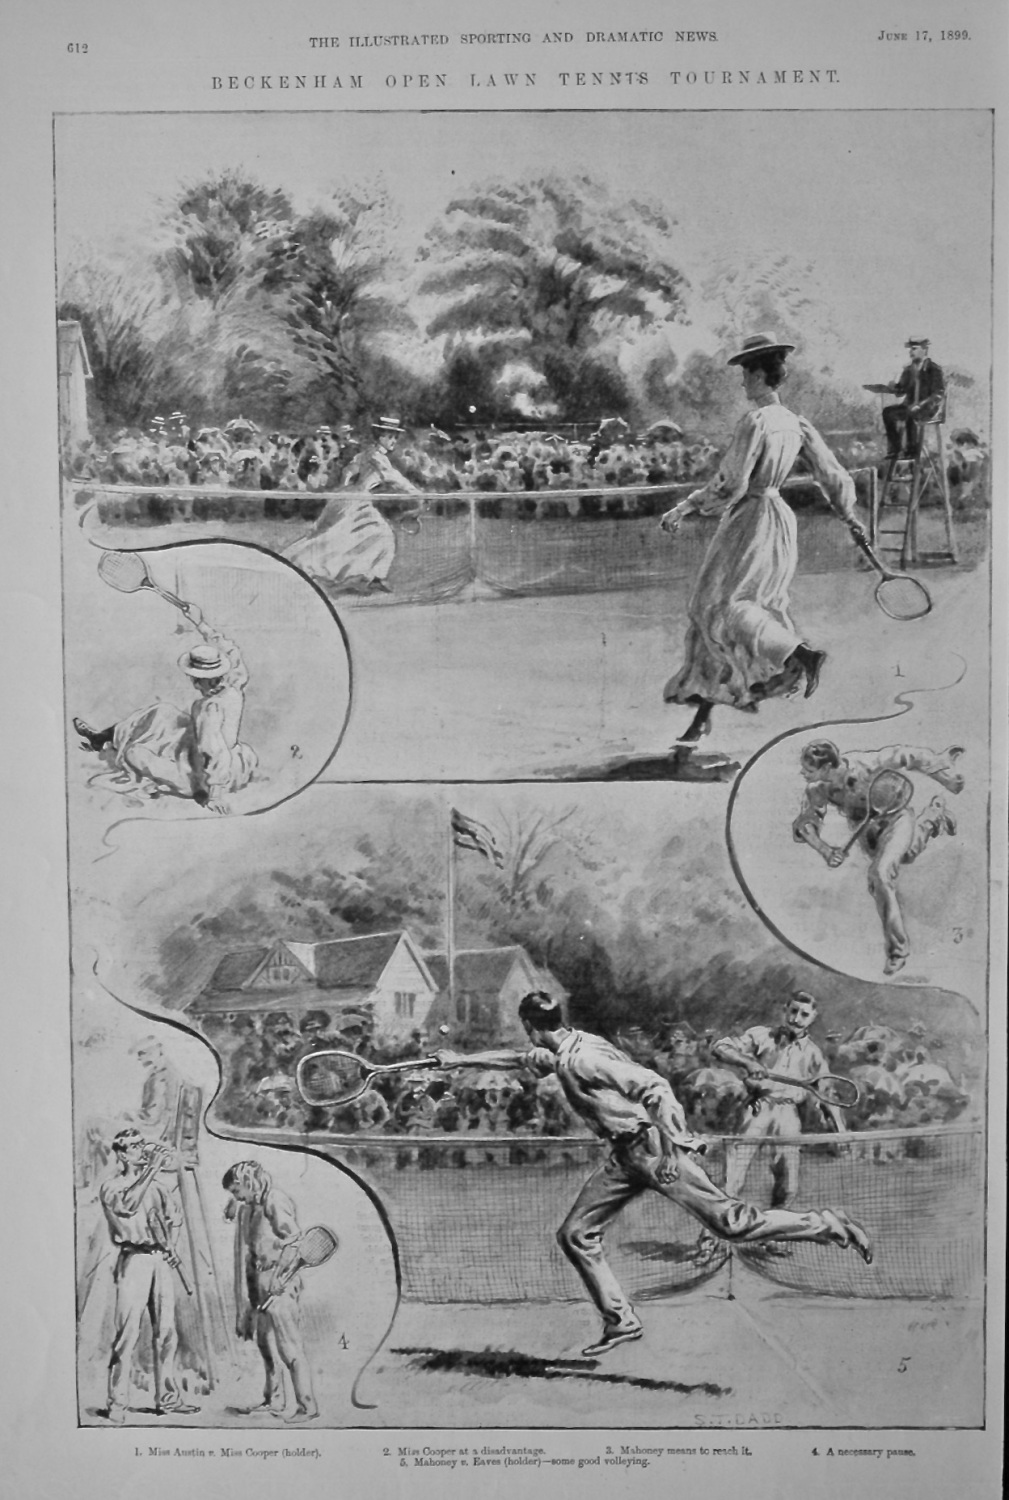 Beckenham Open Lawn Tennis Tournament.  1899.